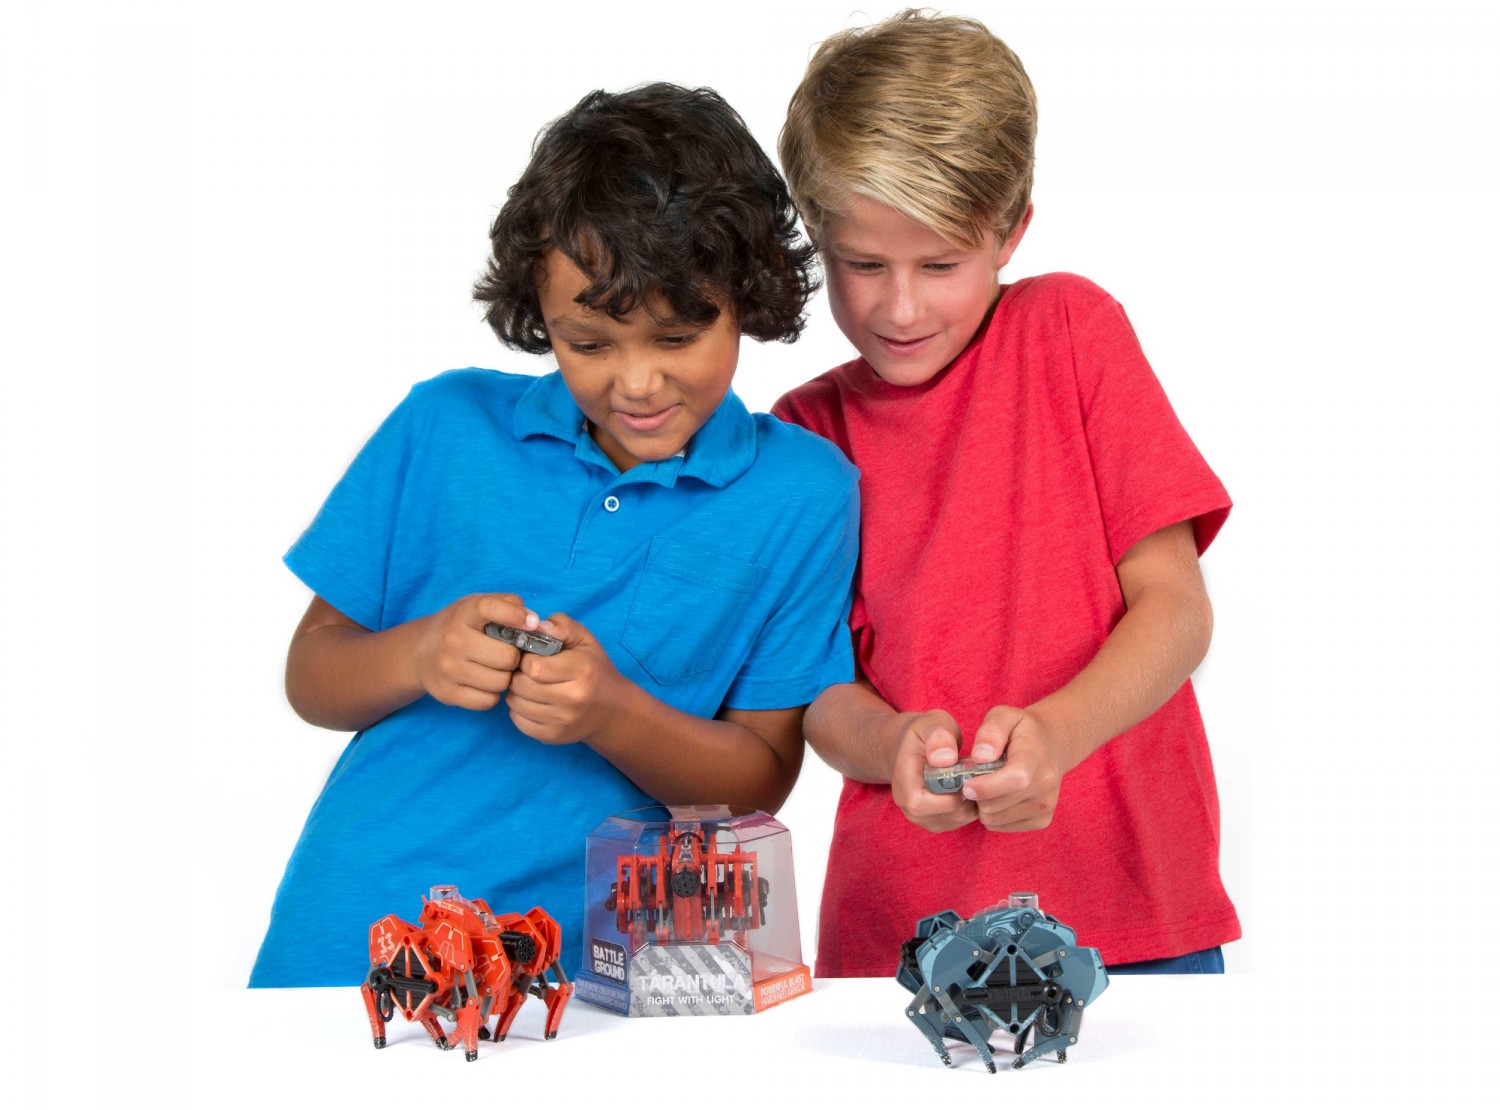 Przedstawiamy roboty zabawki HEXBUG Bojowe tarantule - dual pack